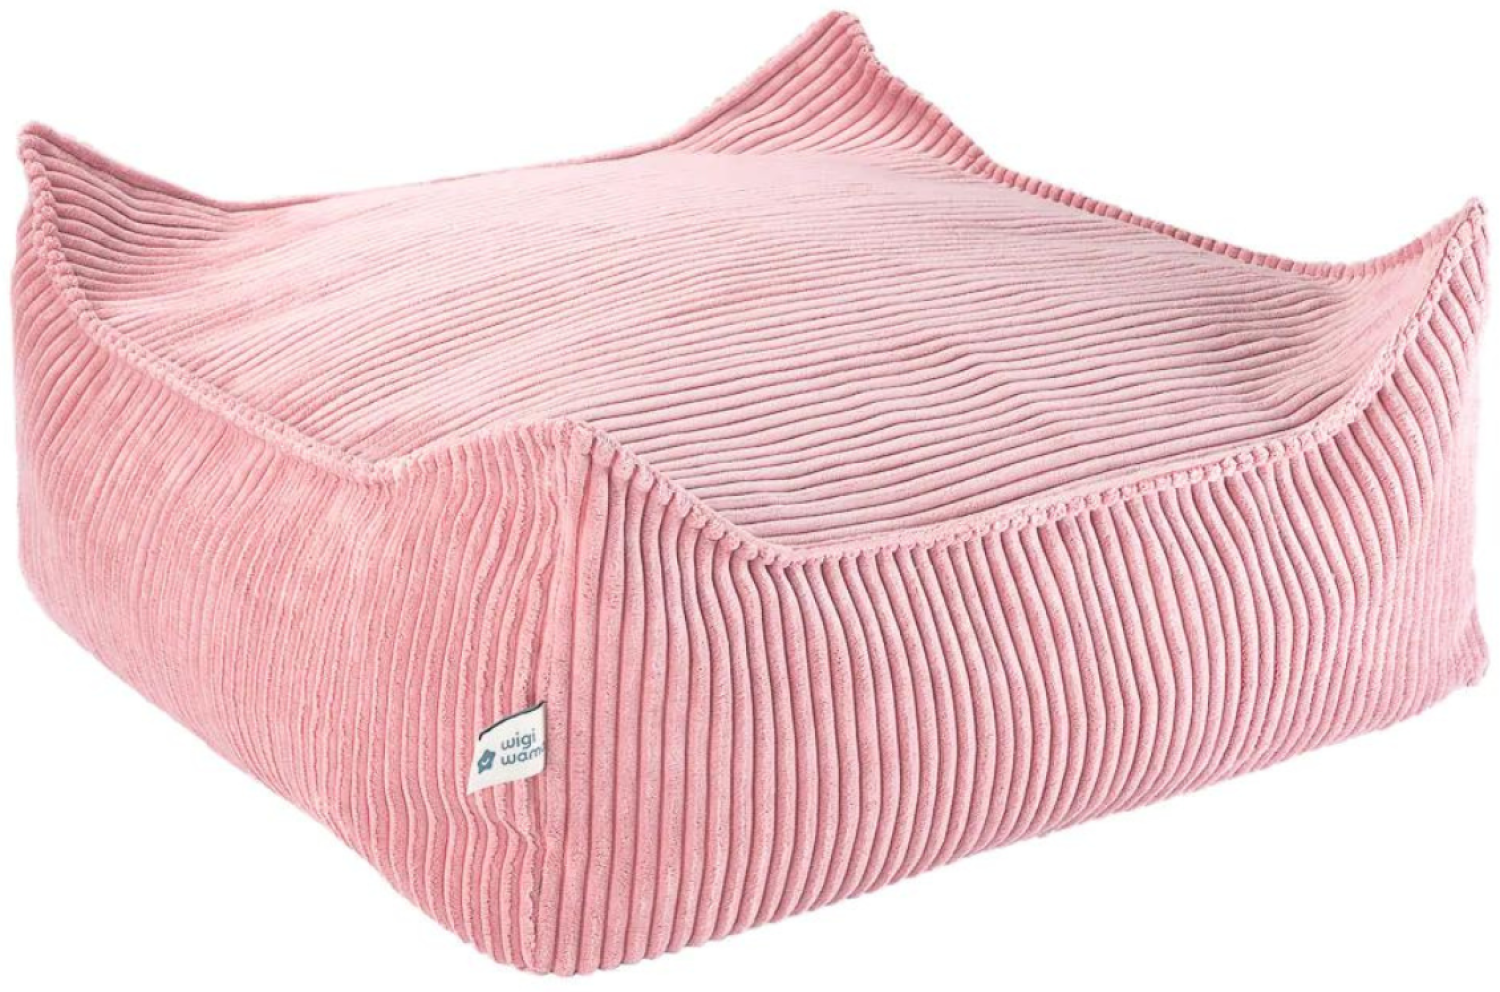 Sitzsack, quadratischer Bodenhocker \"Ottoman\", pink mousse, aus Cordstoff, 60 x 60 x 20 cm, von wigiwama Bild 1